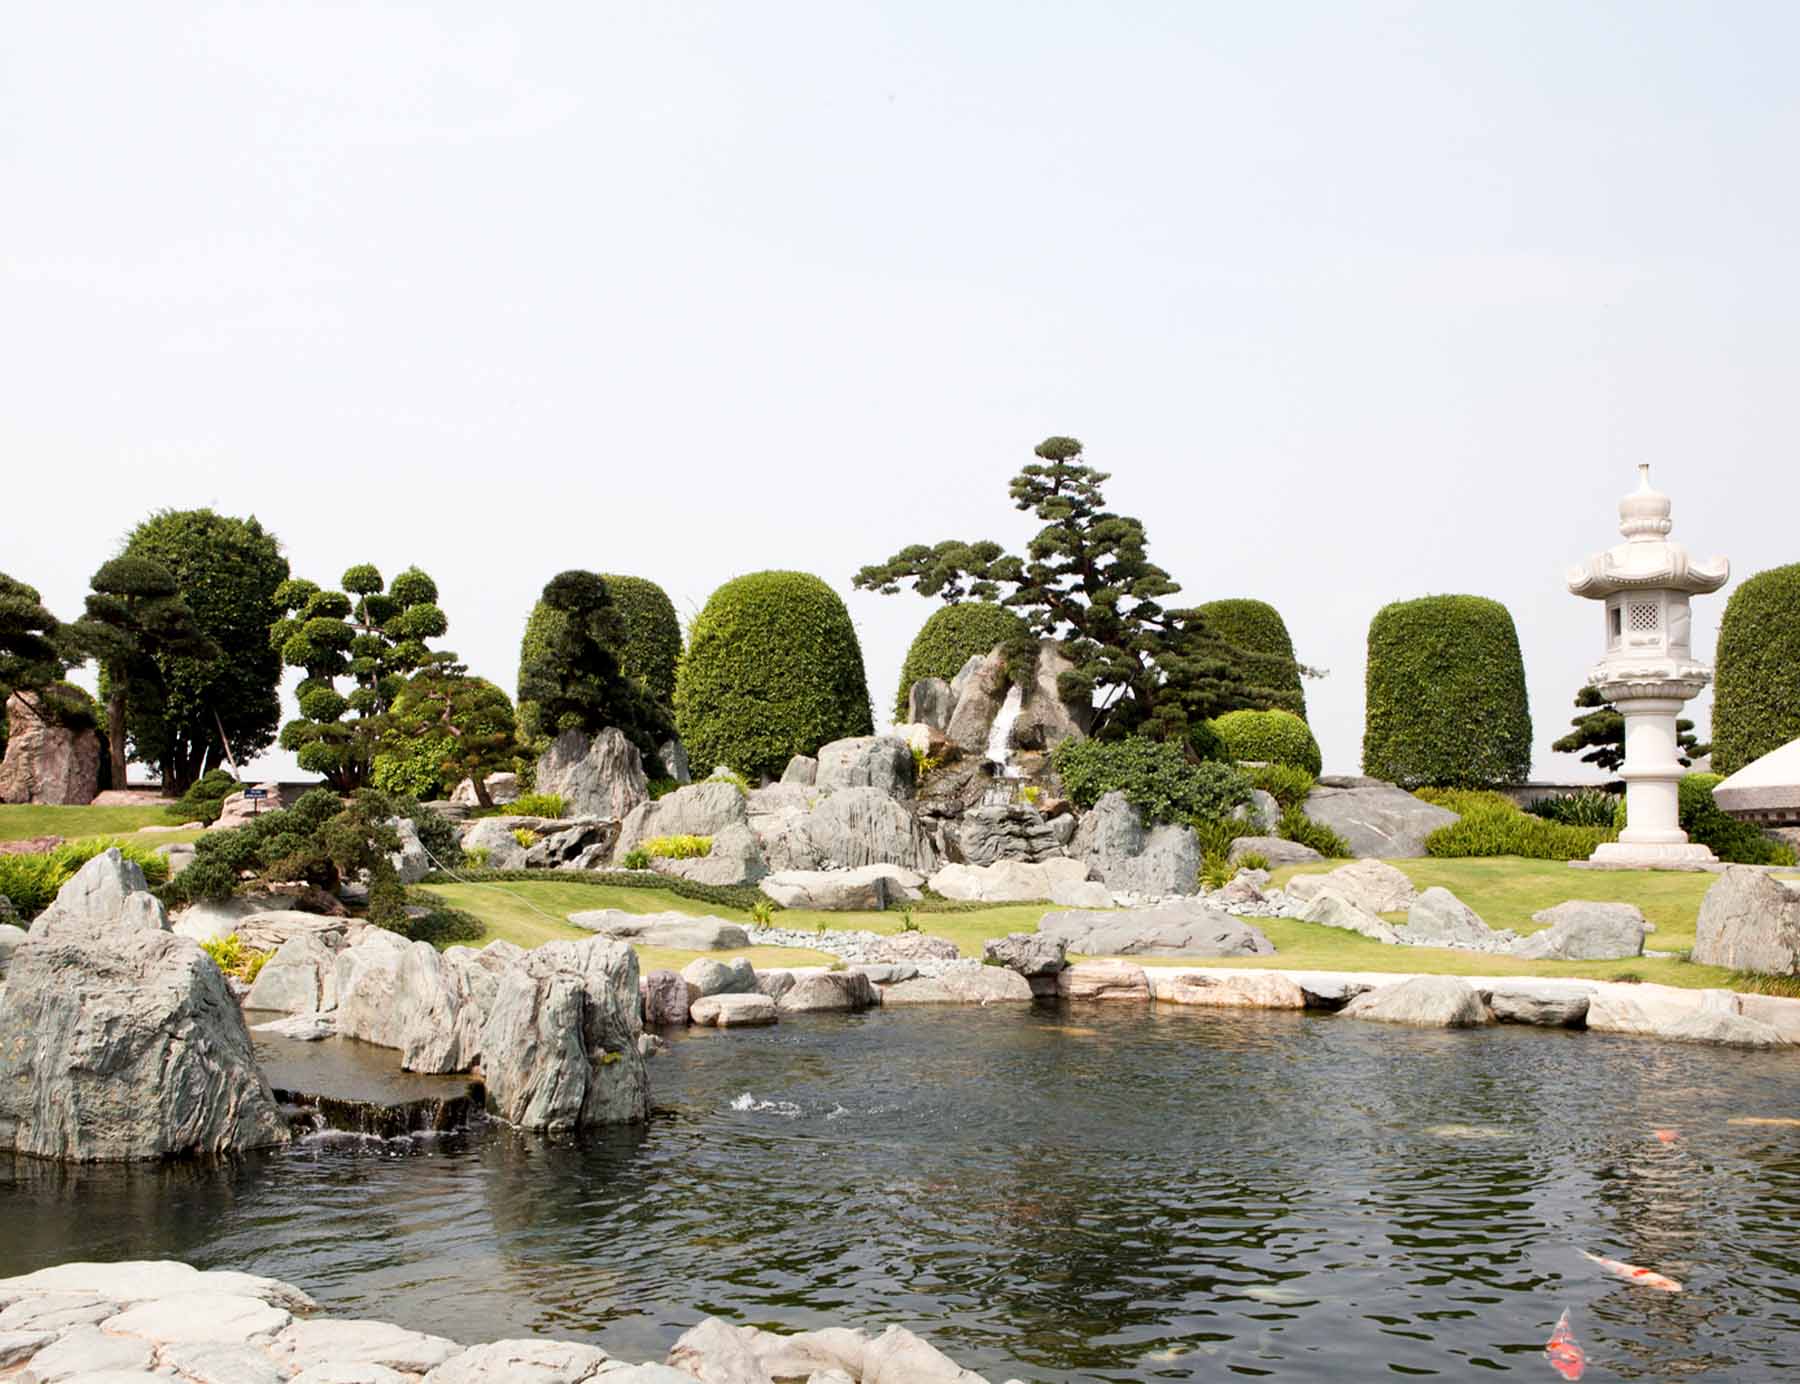 Sân vườn Nhật là không gian thiết kế với sự bày trí ngăn nắp, tỉ mỉ của các vật thể tự nhiên